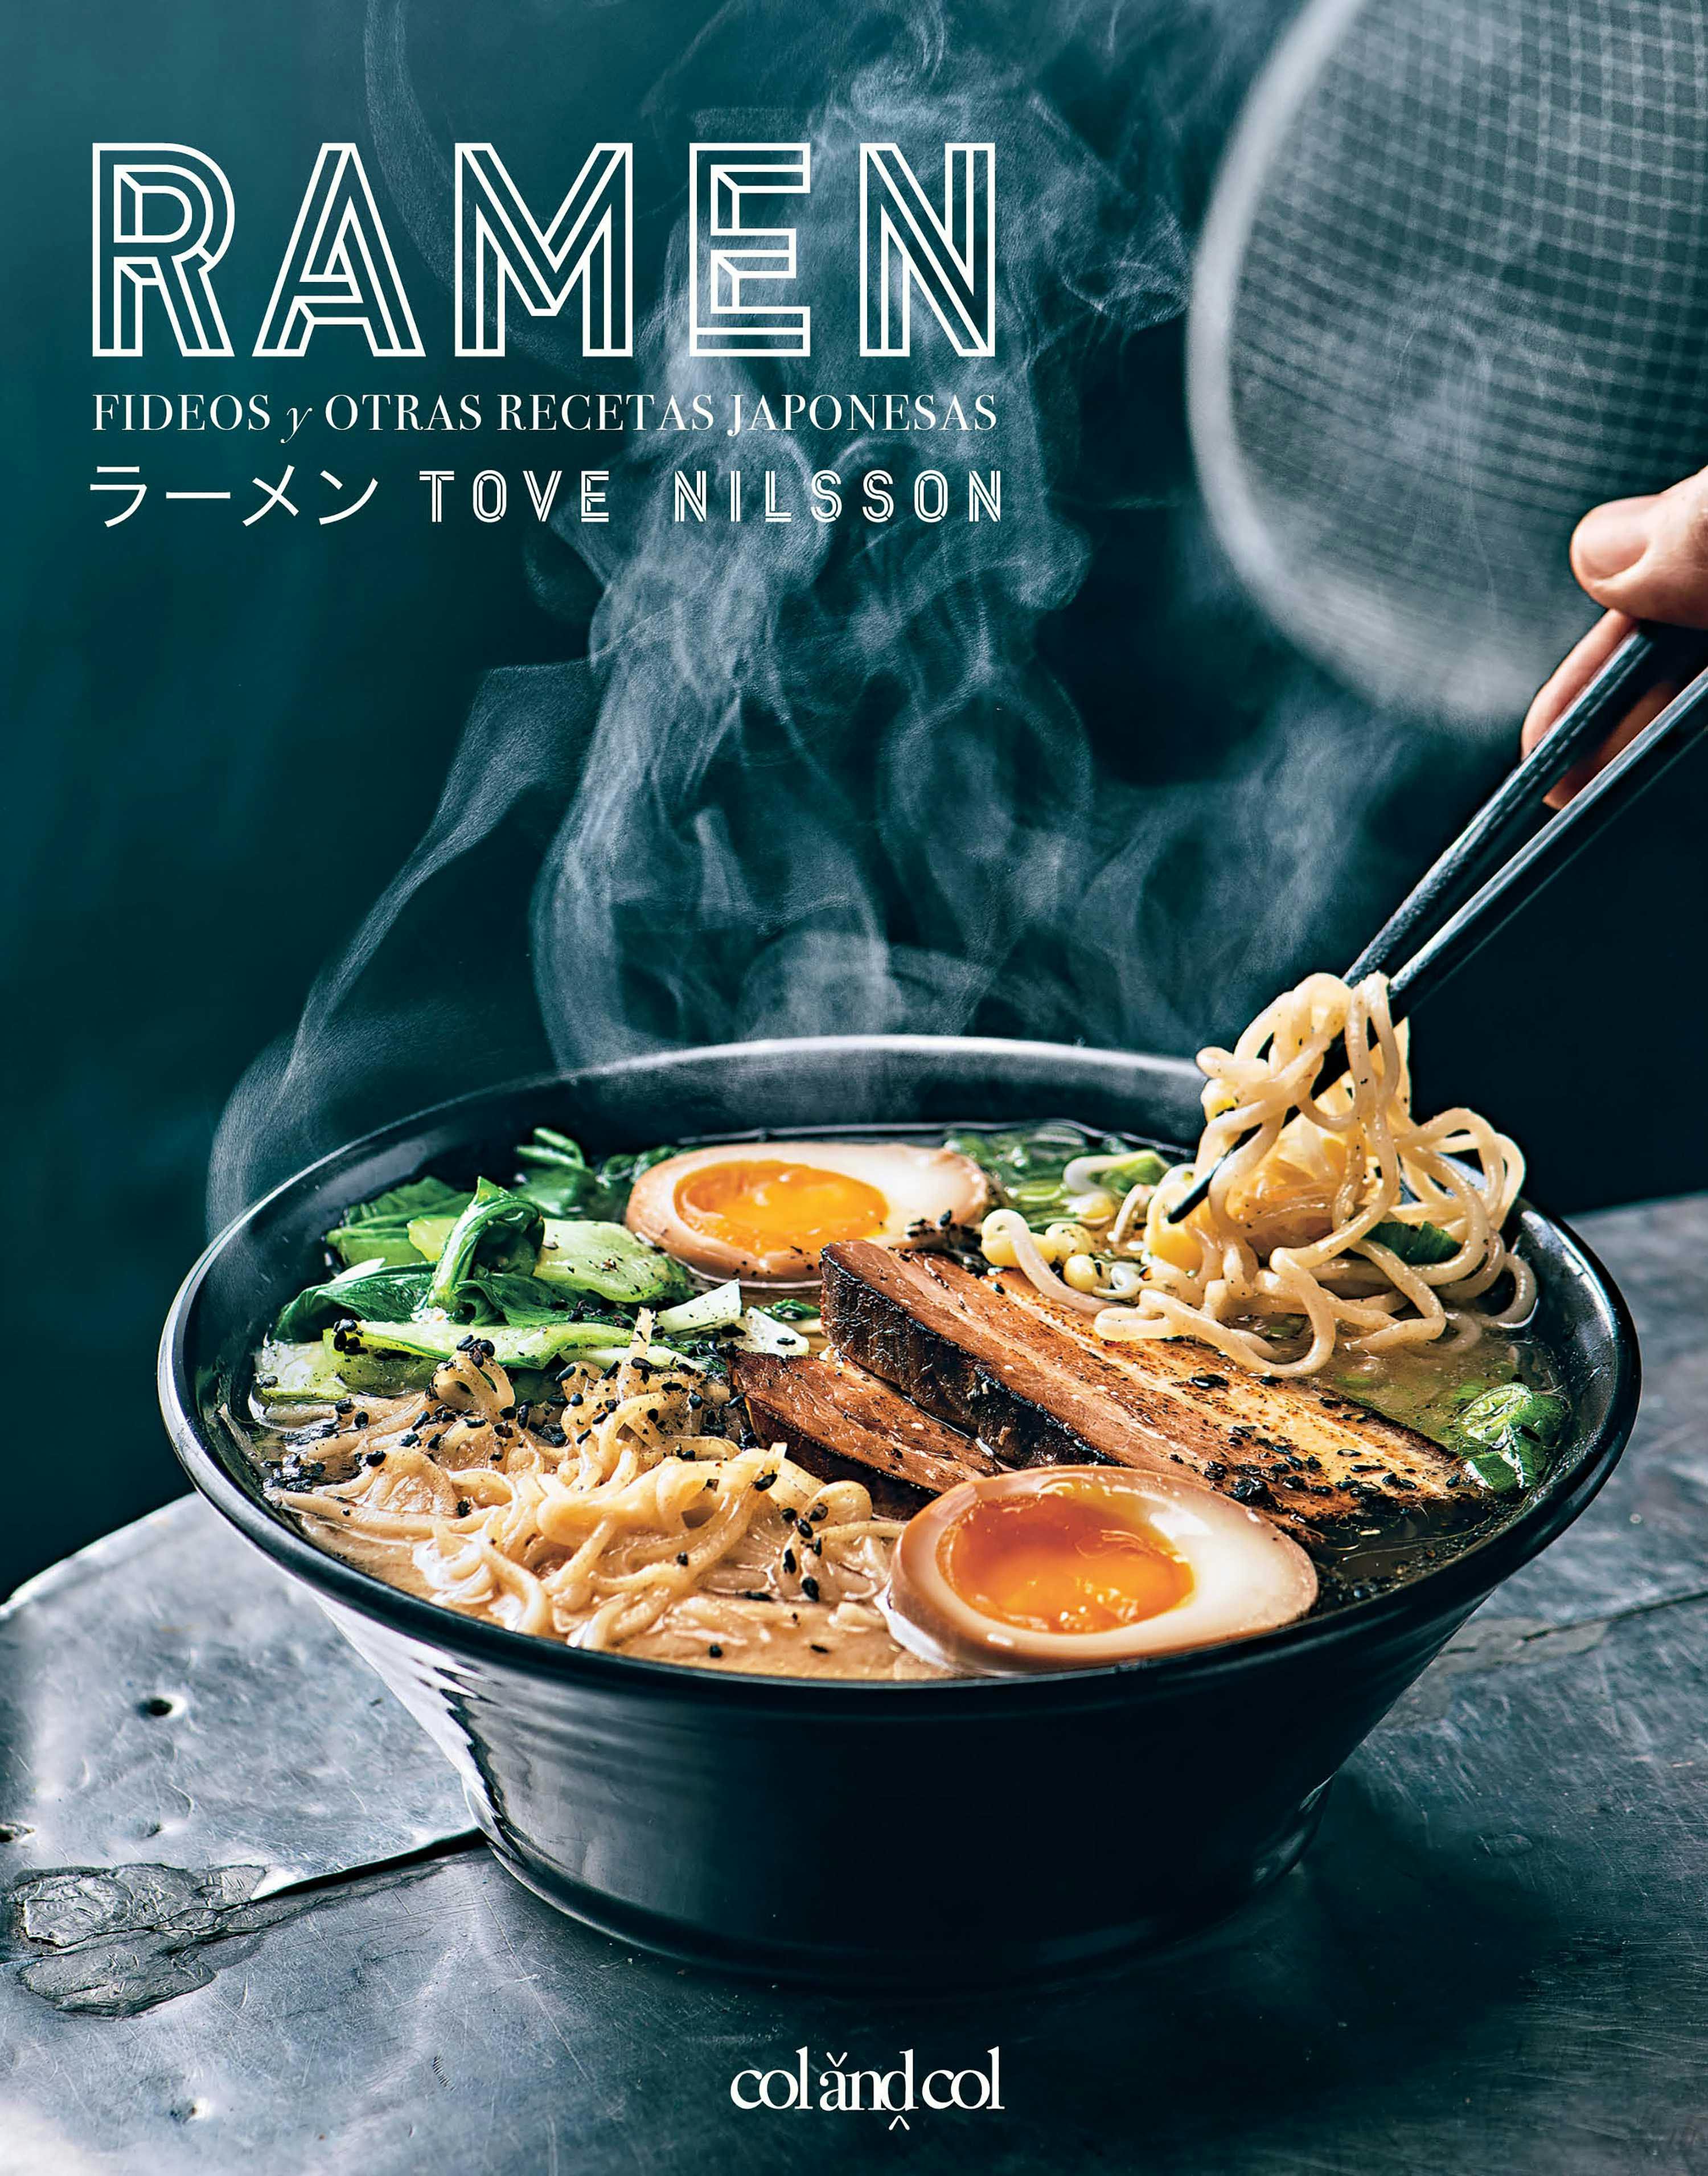 Ramen: Fideos y otras recetas japonesas - Tove Nilsson